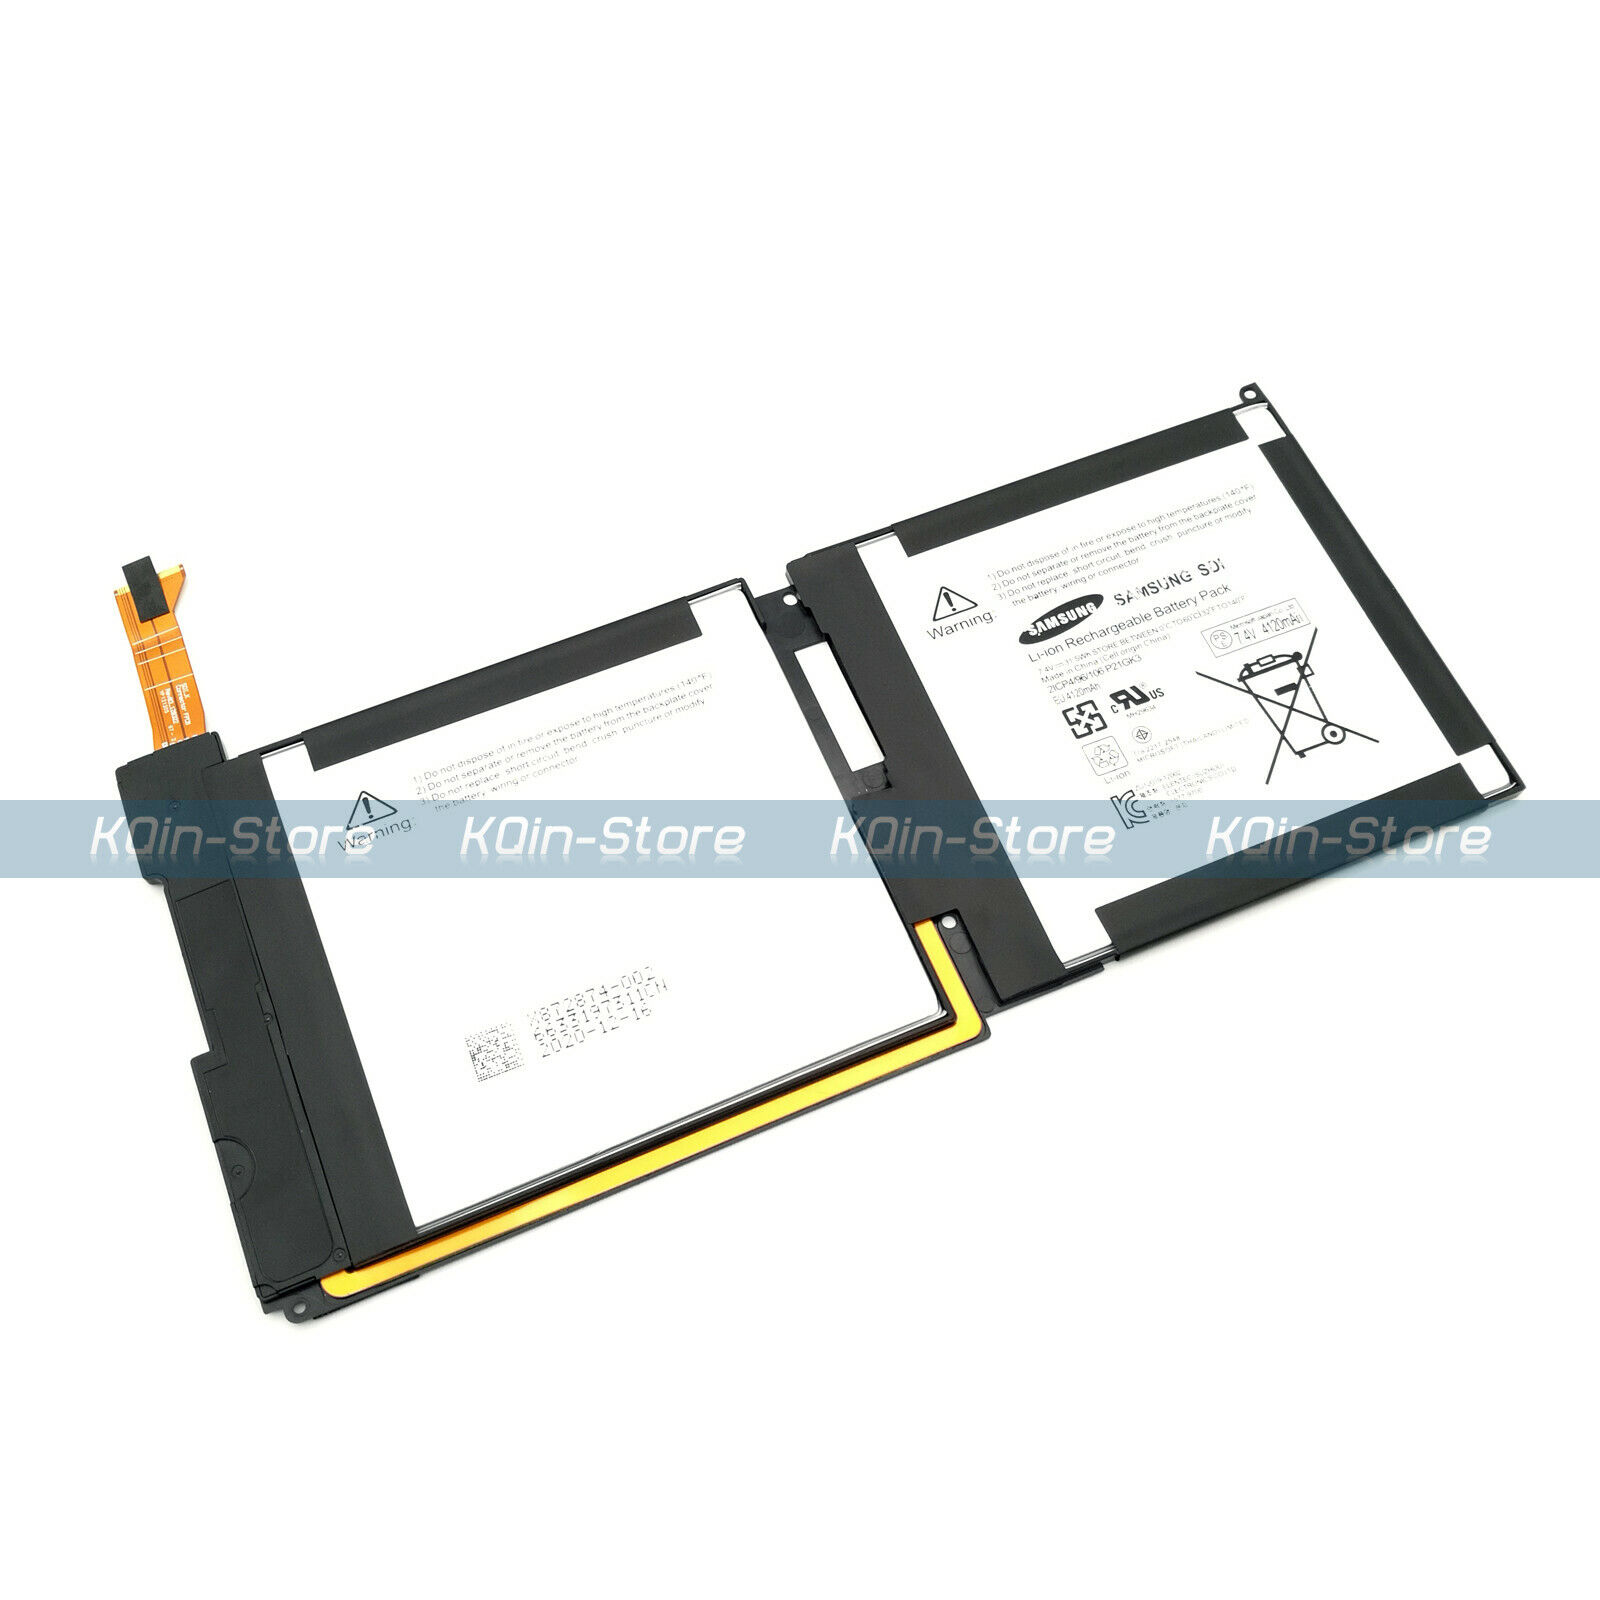 New Genuine P21GK3 Battery for Microsoft Surface RT 1st Gen 1516 32GB Tablet OEM